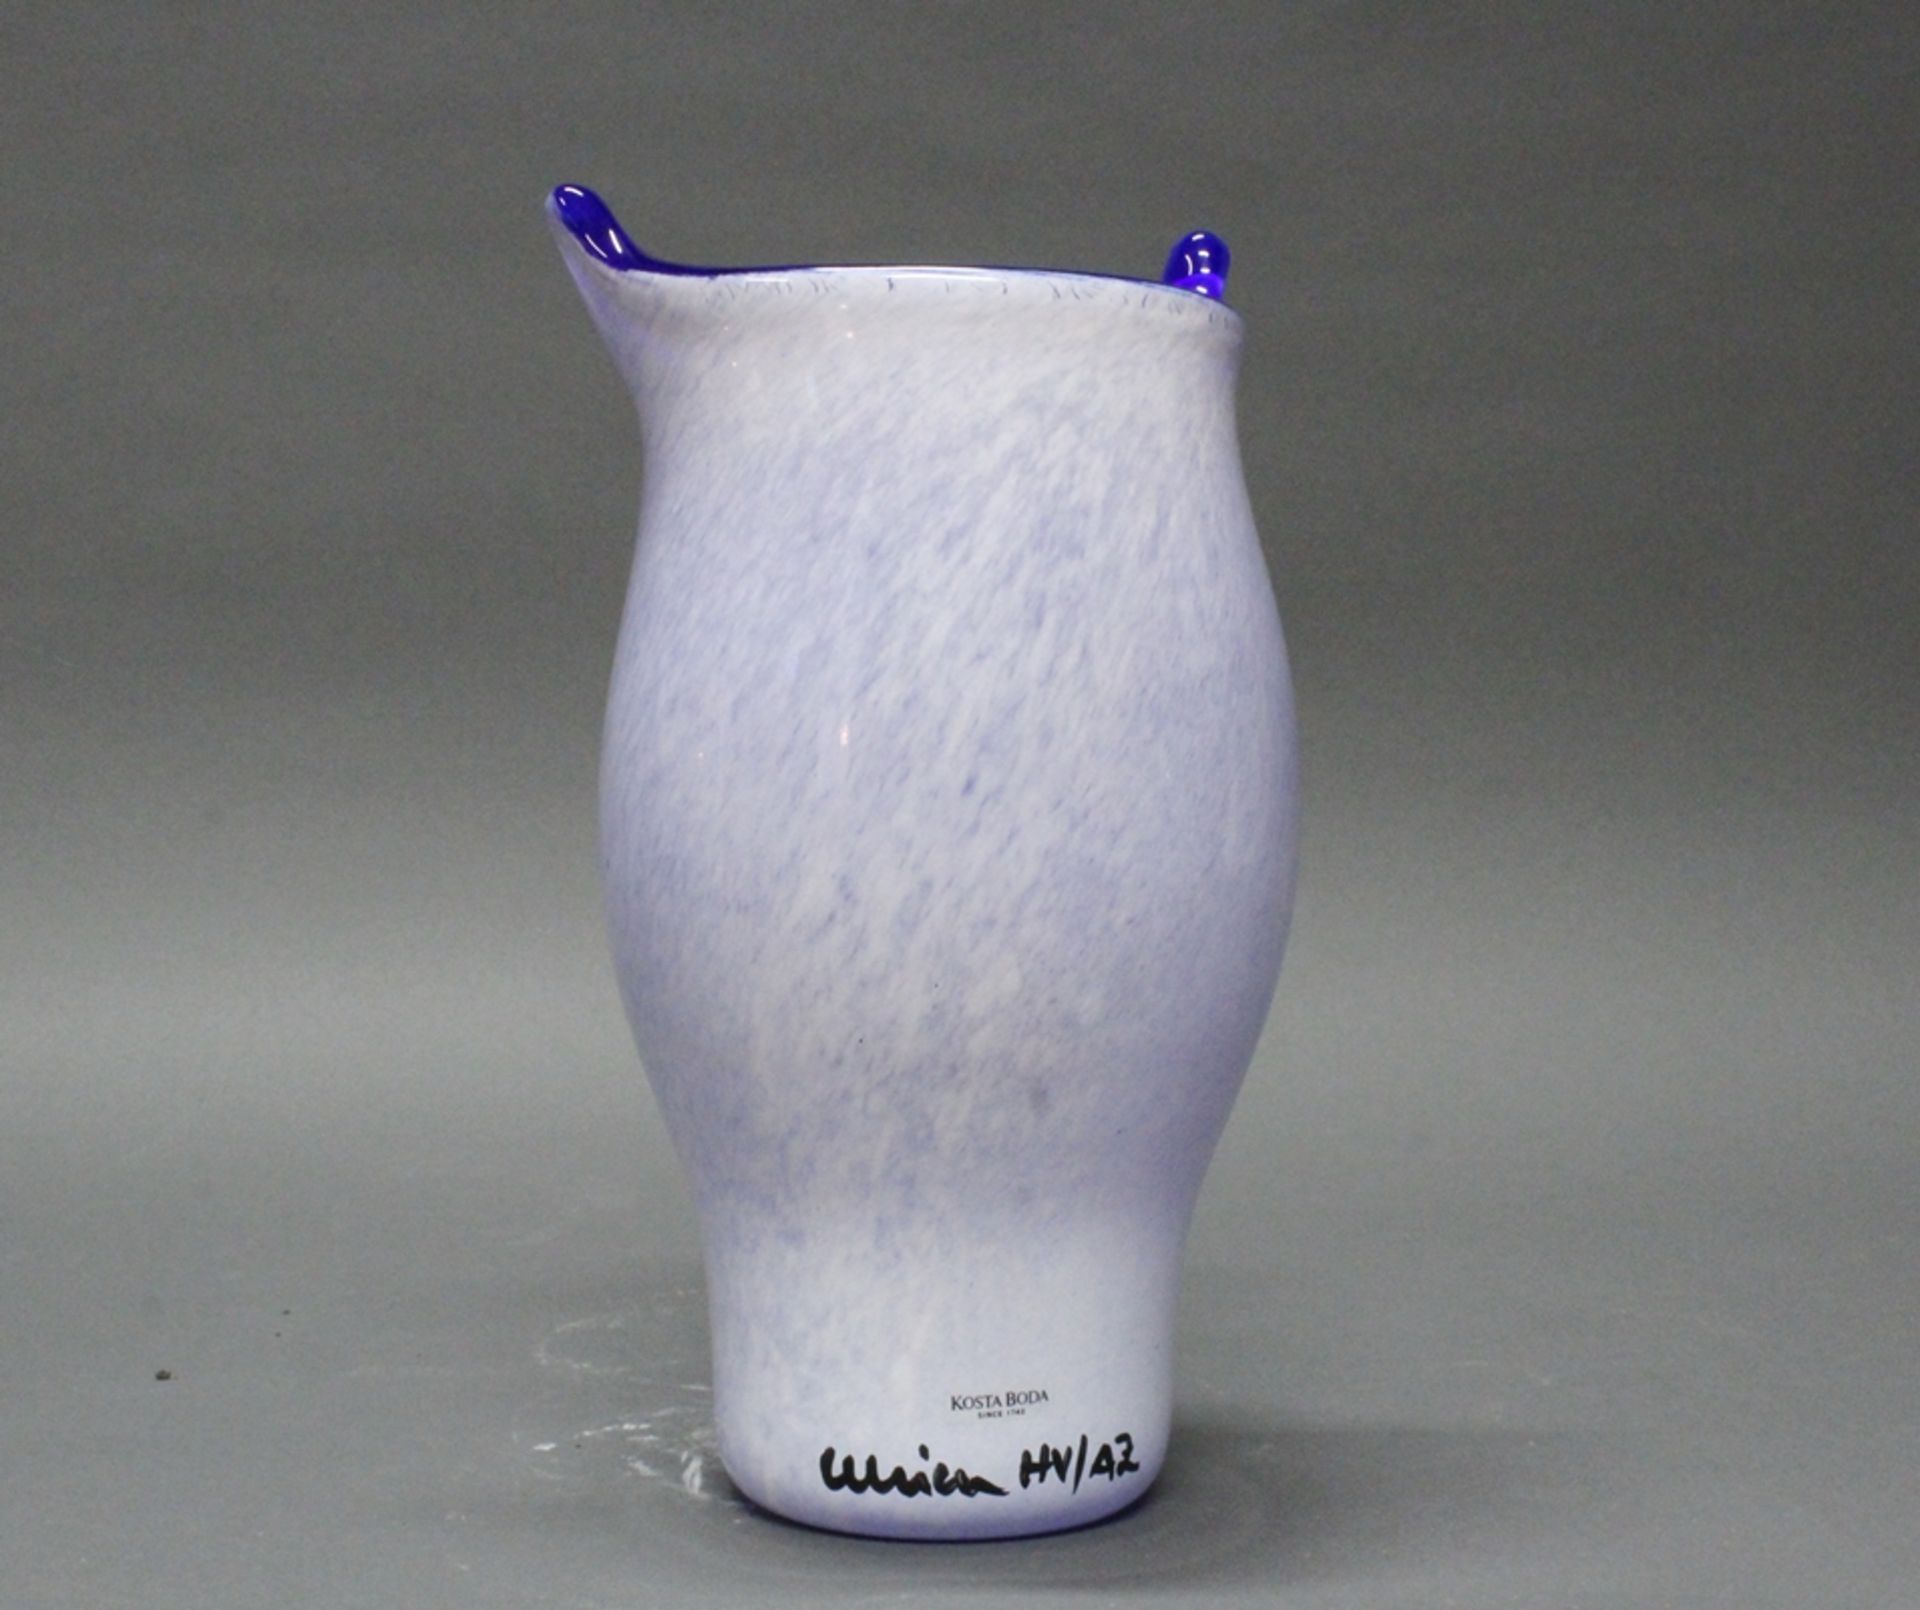 Vase, "Open Mind", Kosta Boda, Nr. 7048744, Glas, polychrom, Modellentwurf von Ulrica Hydman-Vallie - Bild 2 aus 3